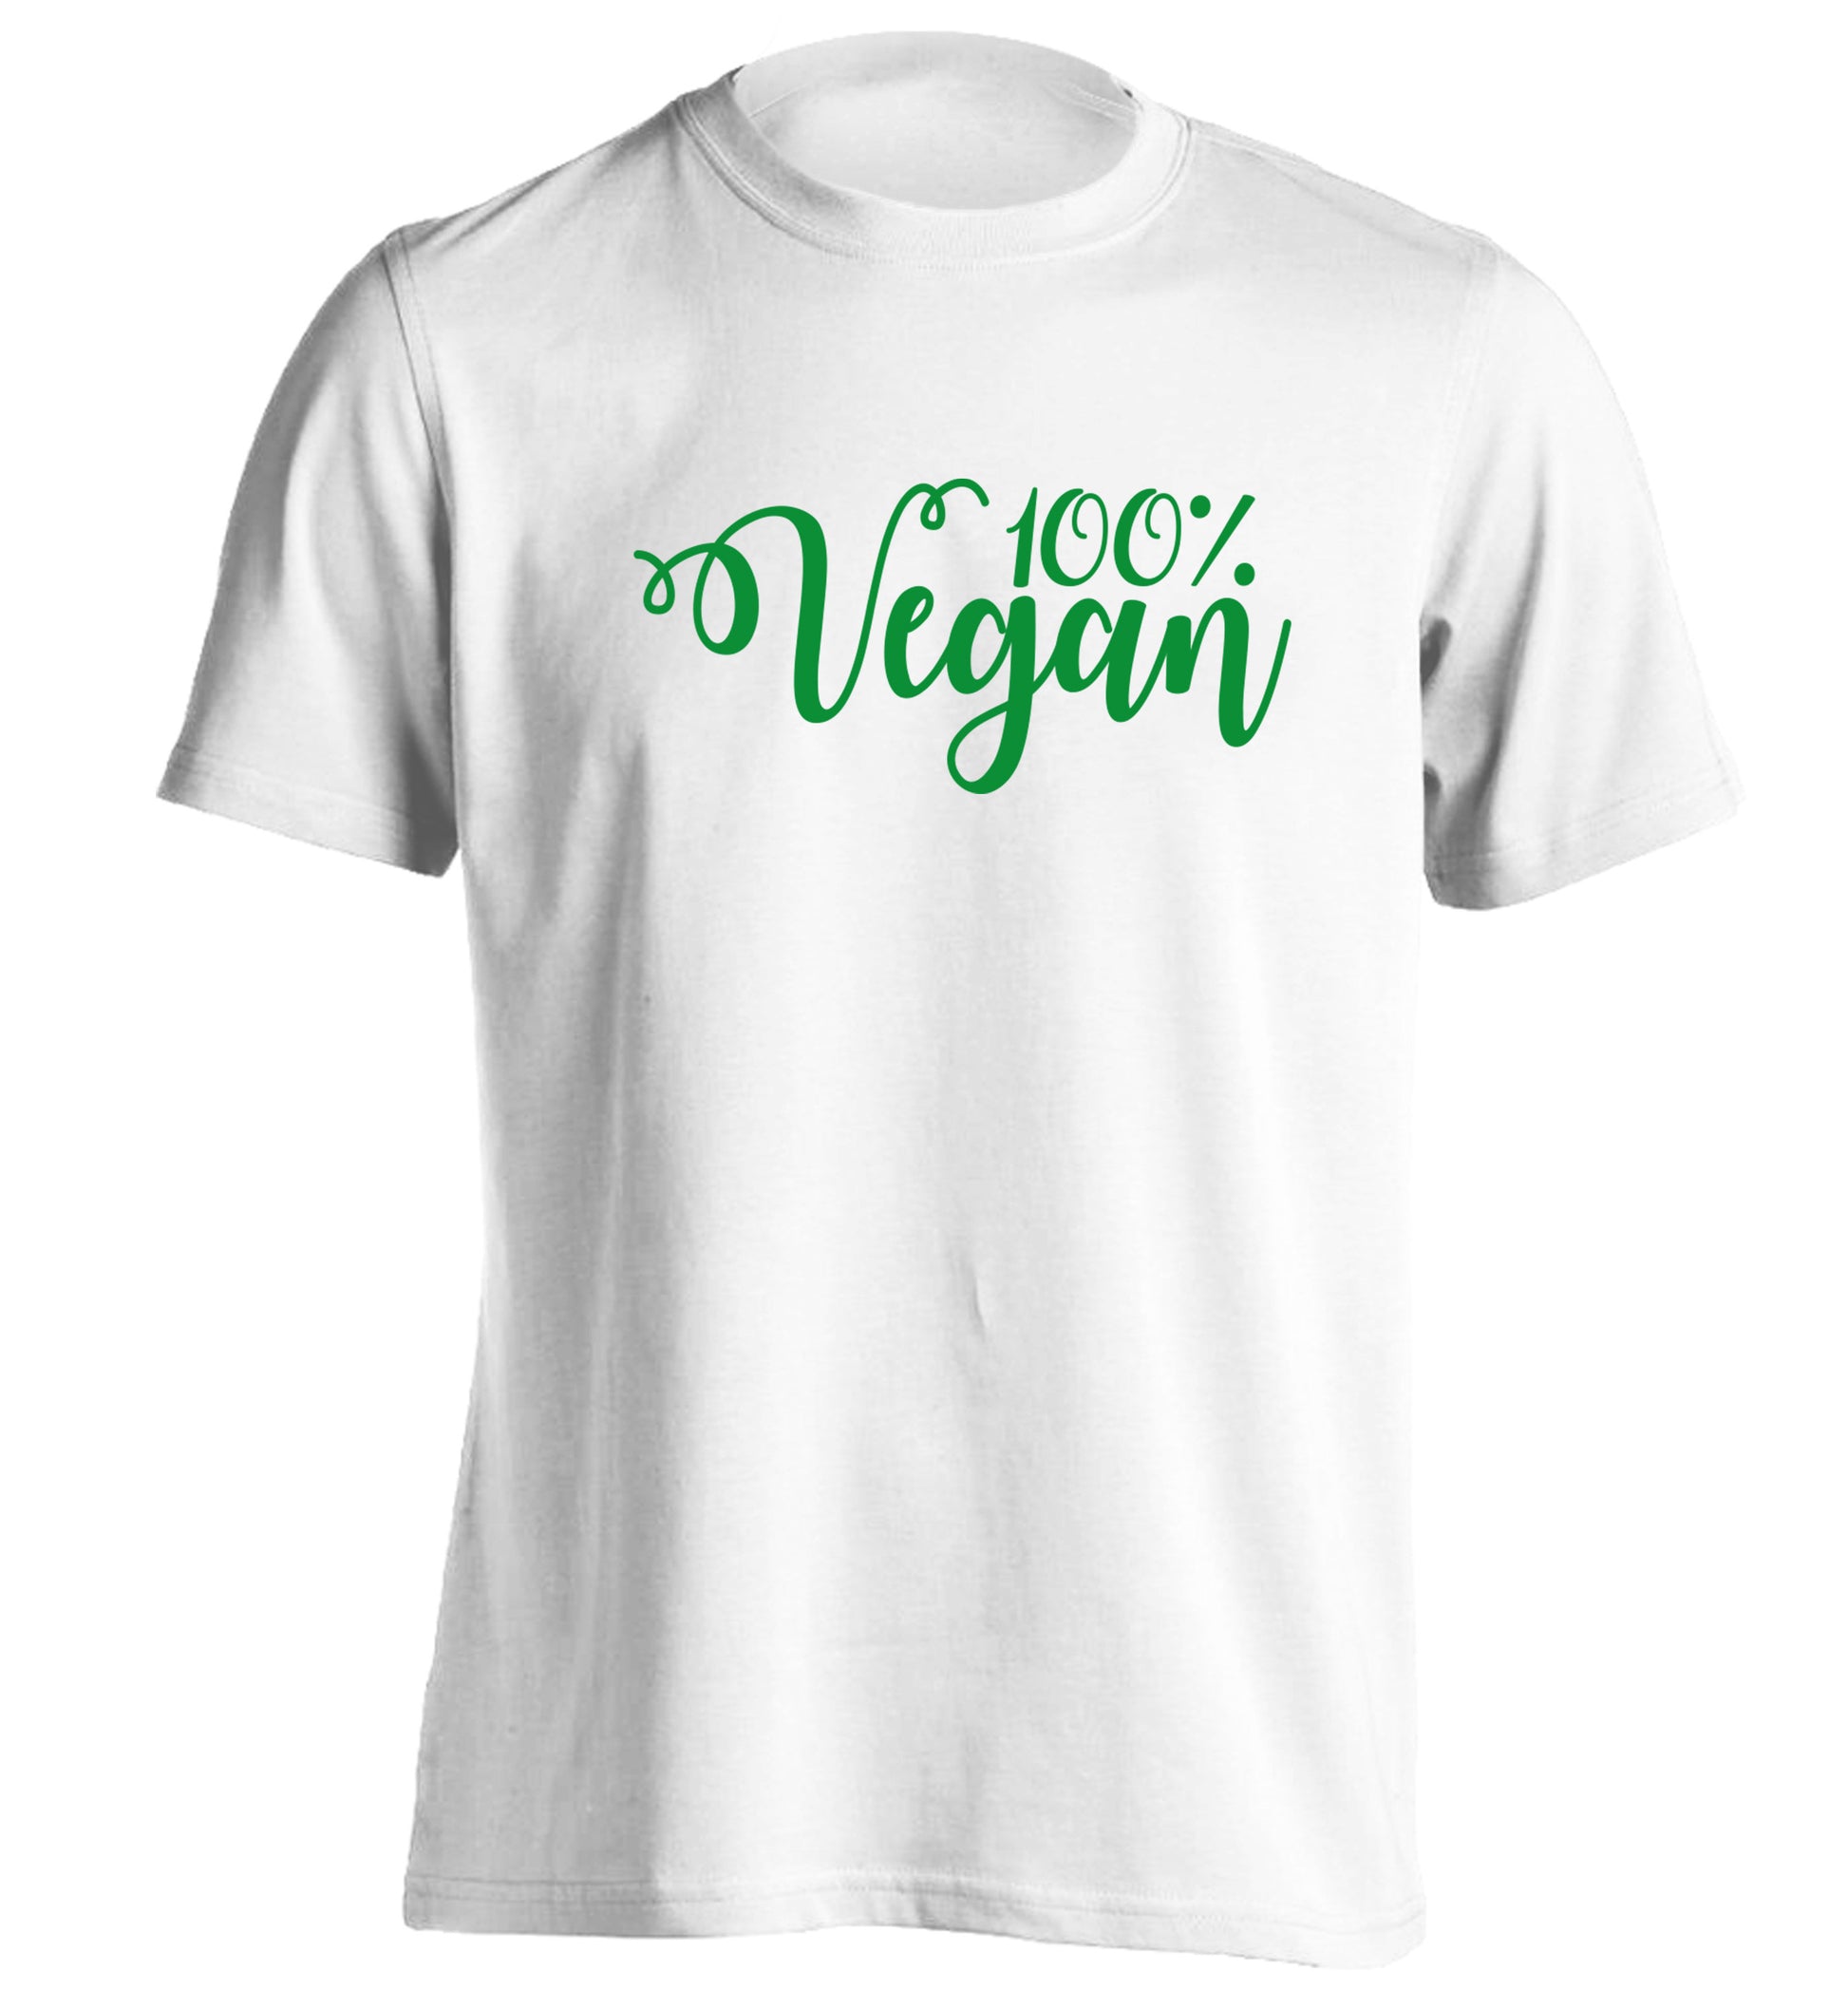 100% Vegan adults unisex white Tshirt 2XL